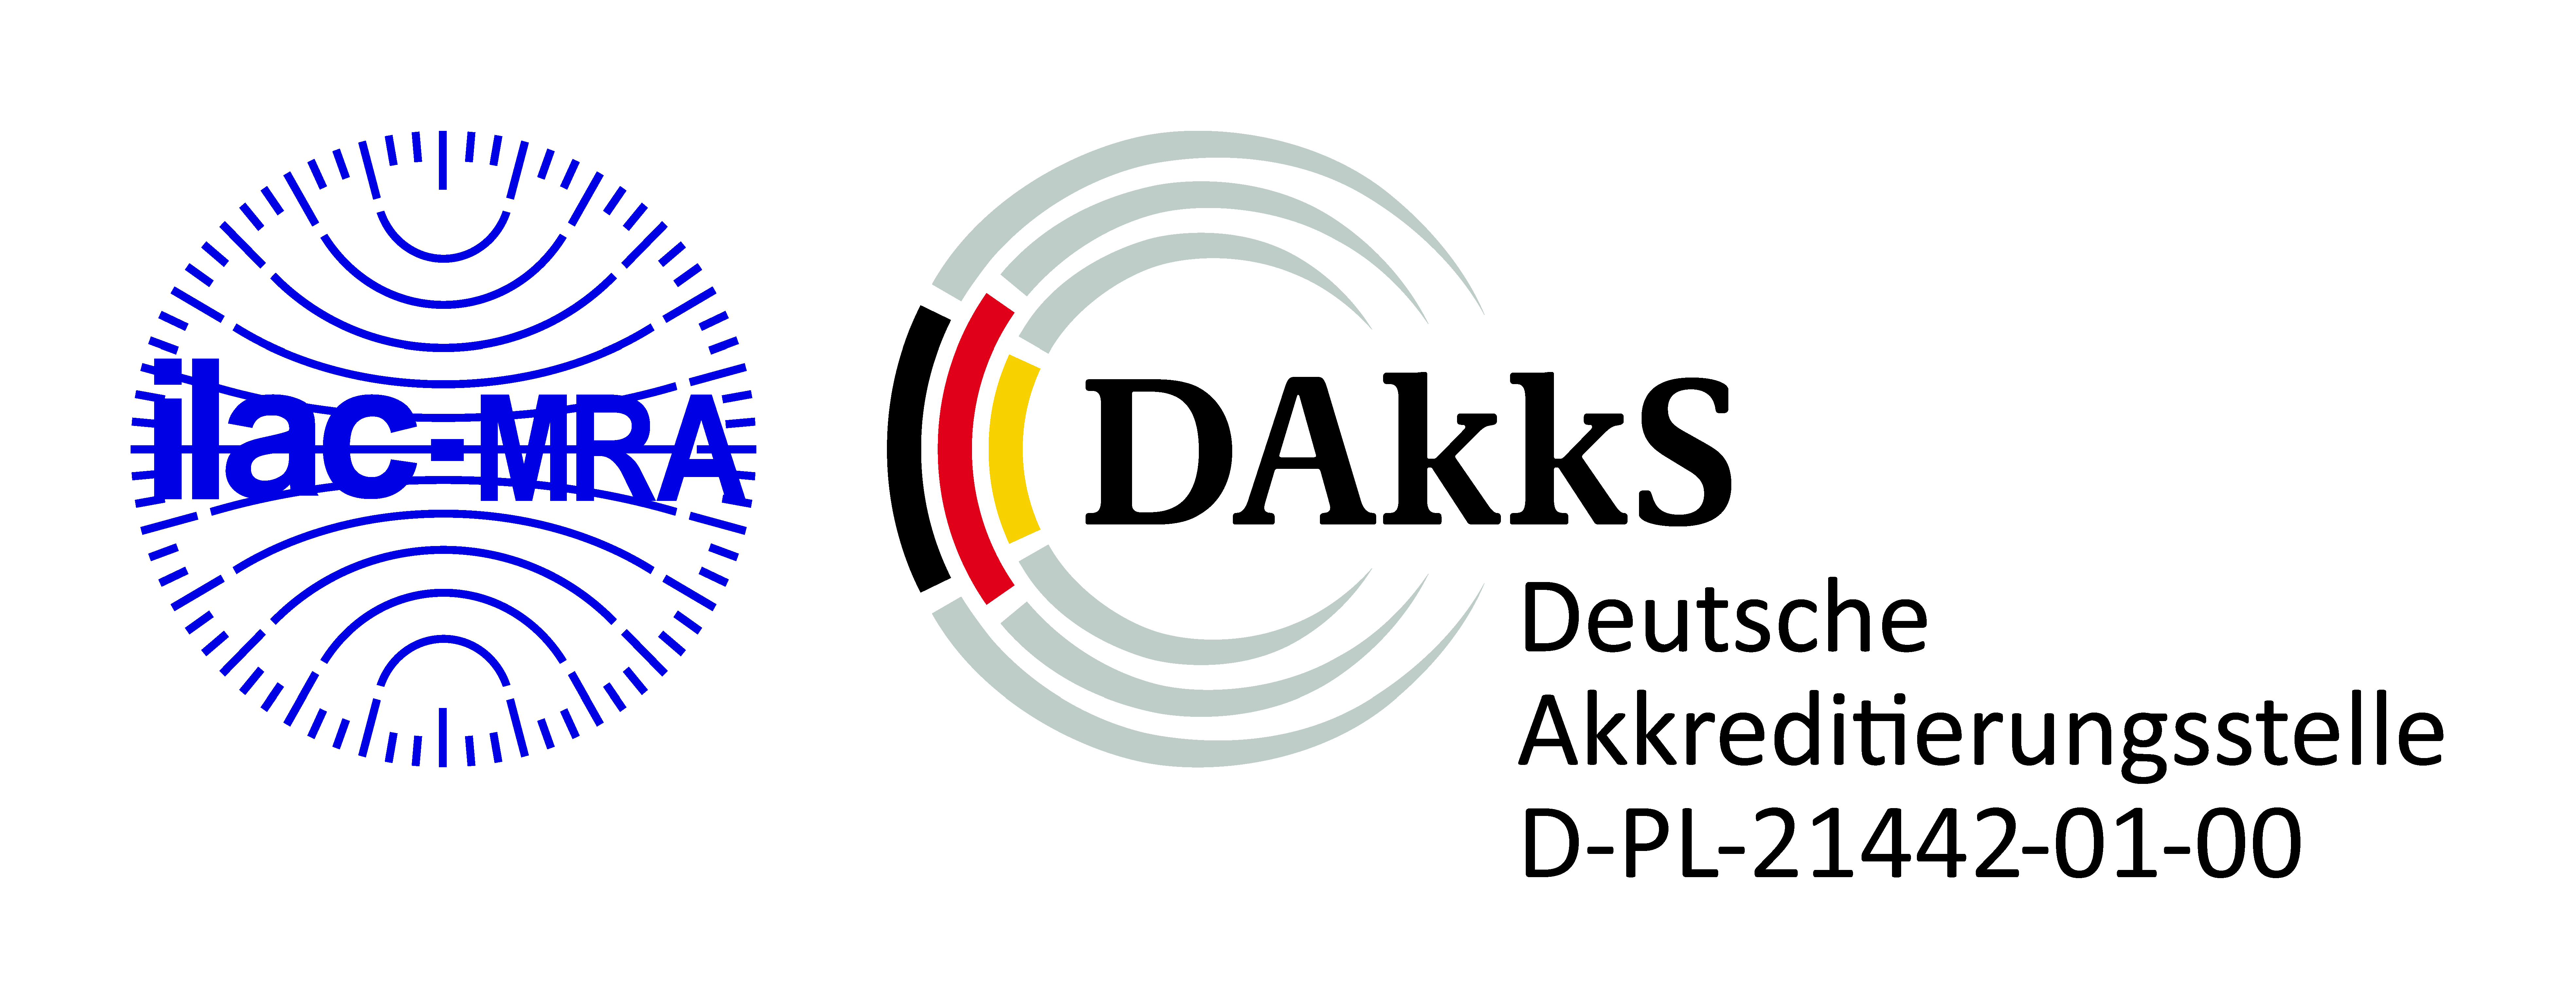 DAkkS-Logo_RegNr